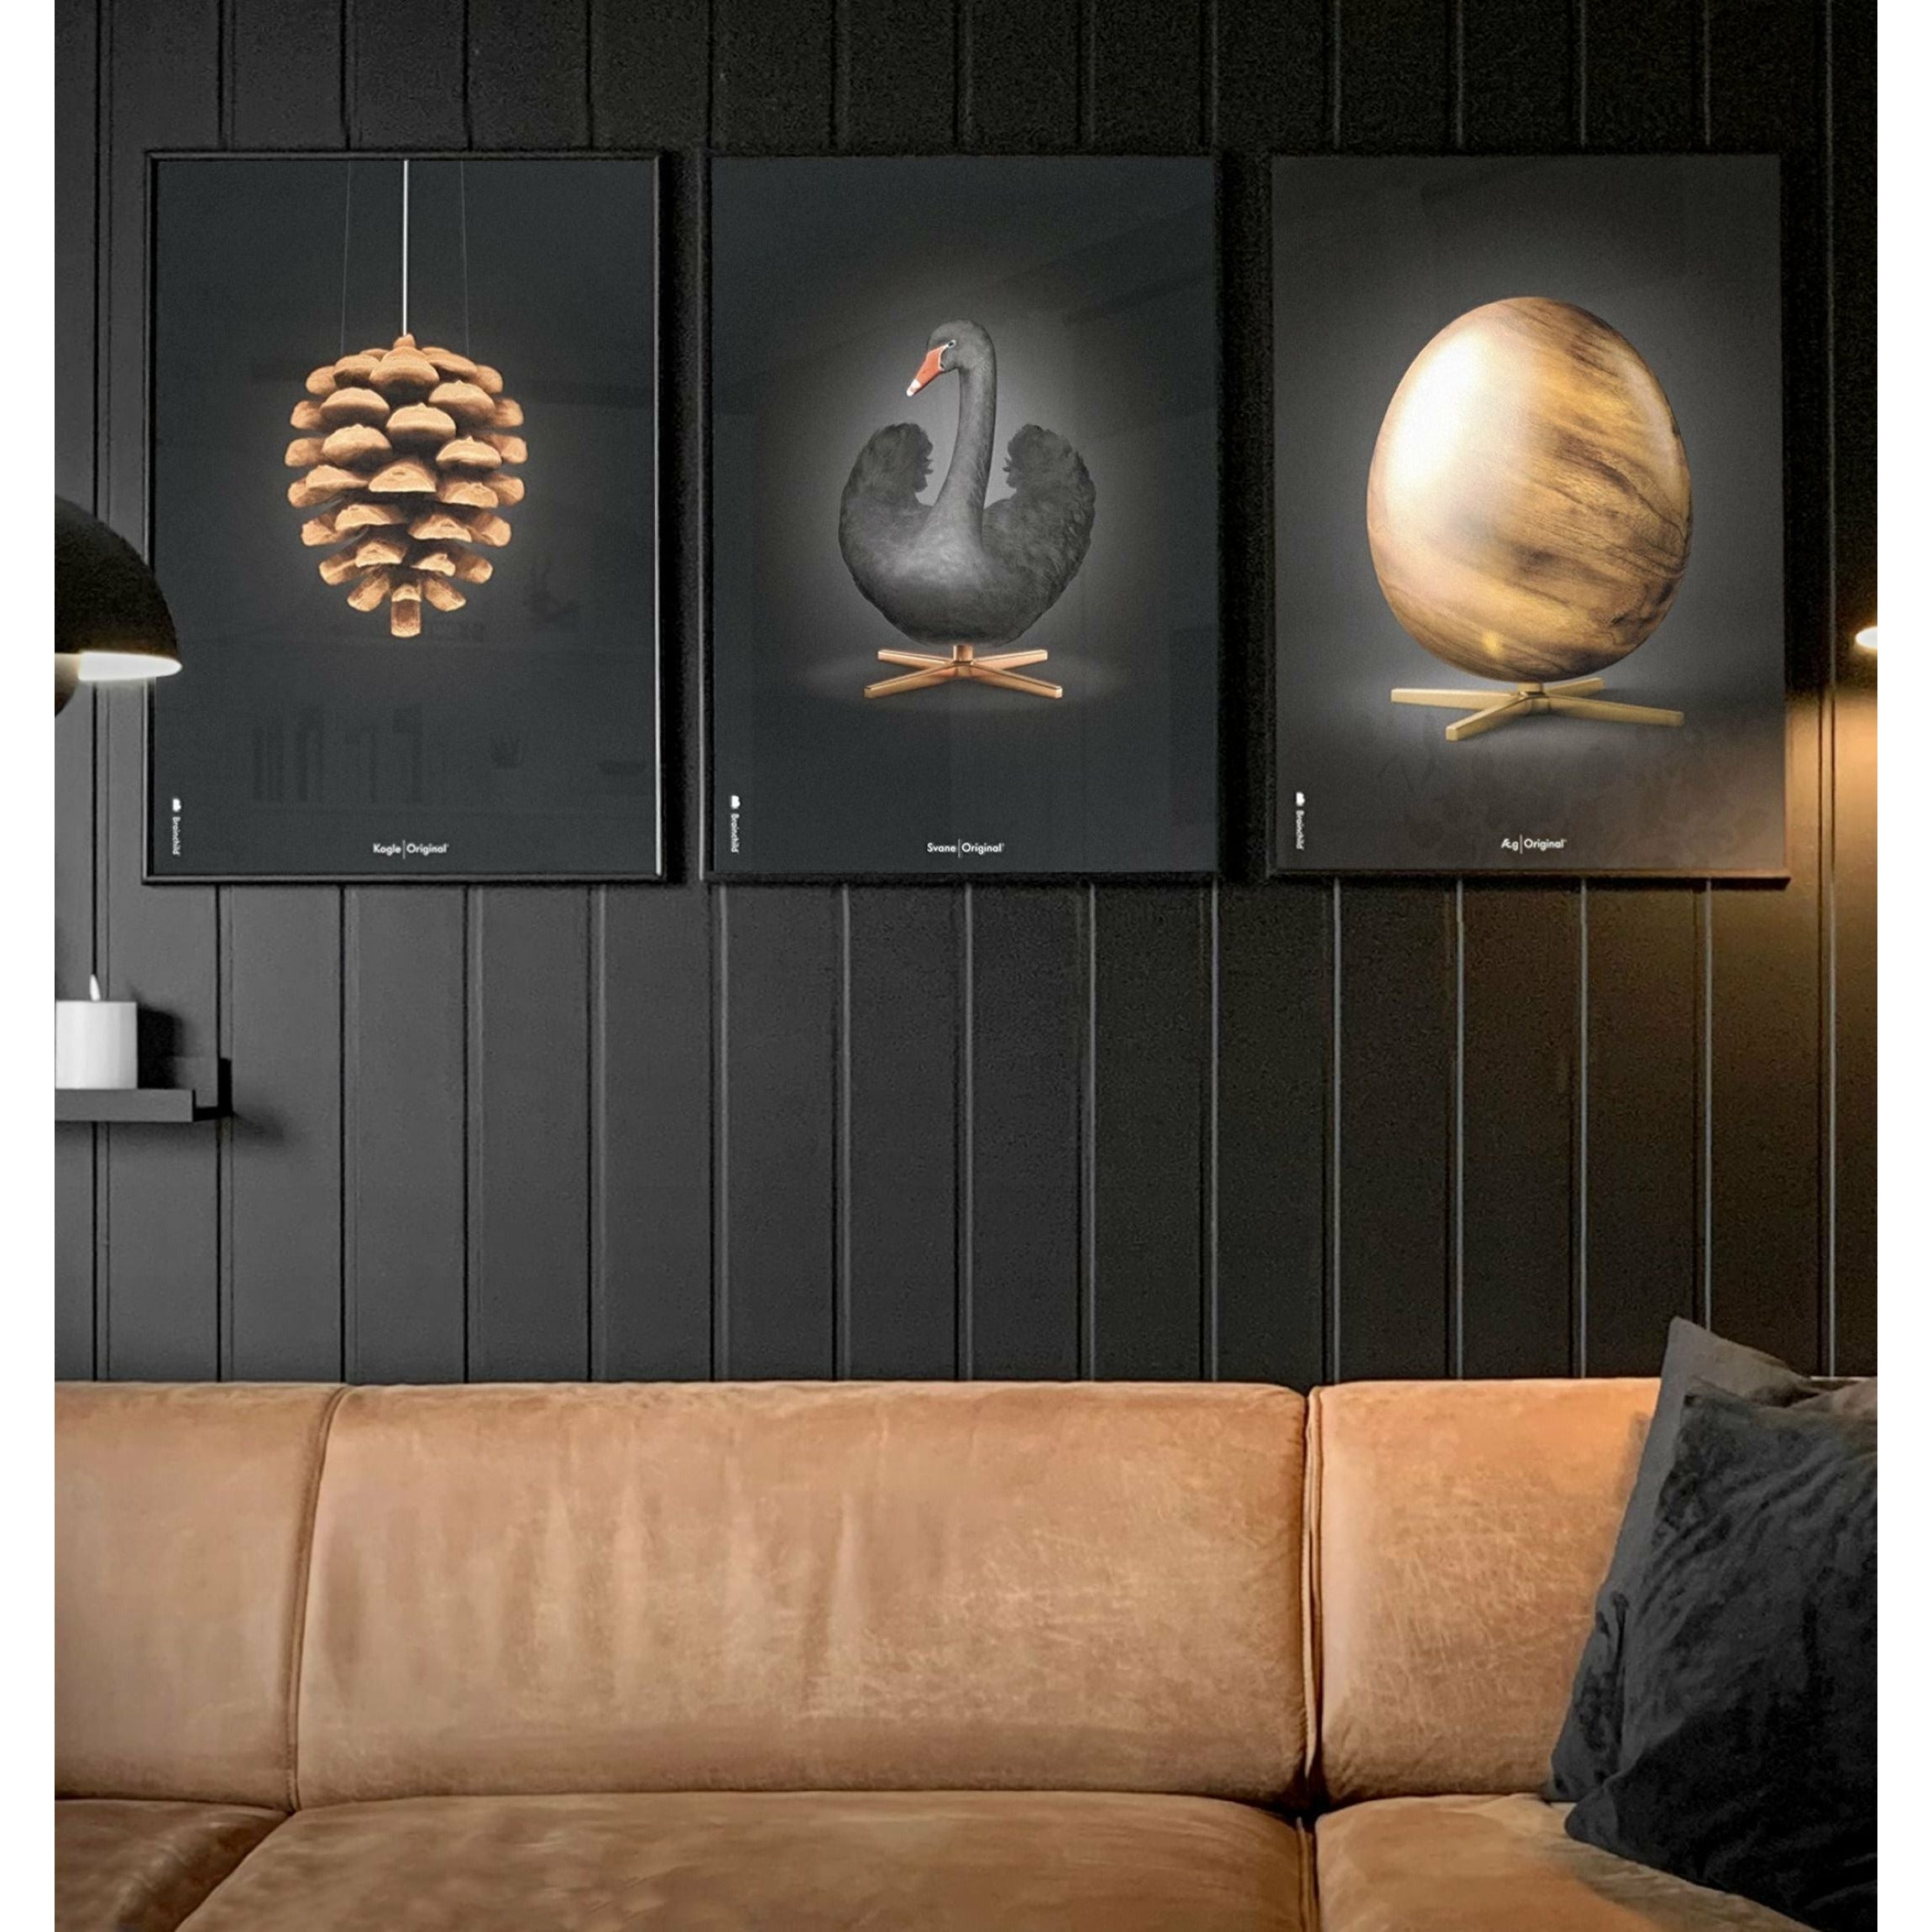 Brainchild Pine Cone Classic Poster ohne Rahmen 50x70 Cm, schwarzer Hintergrund